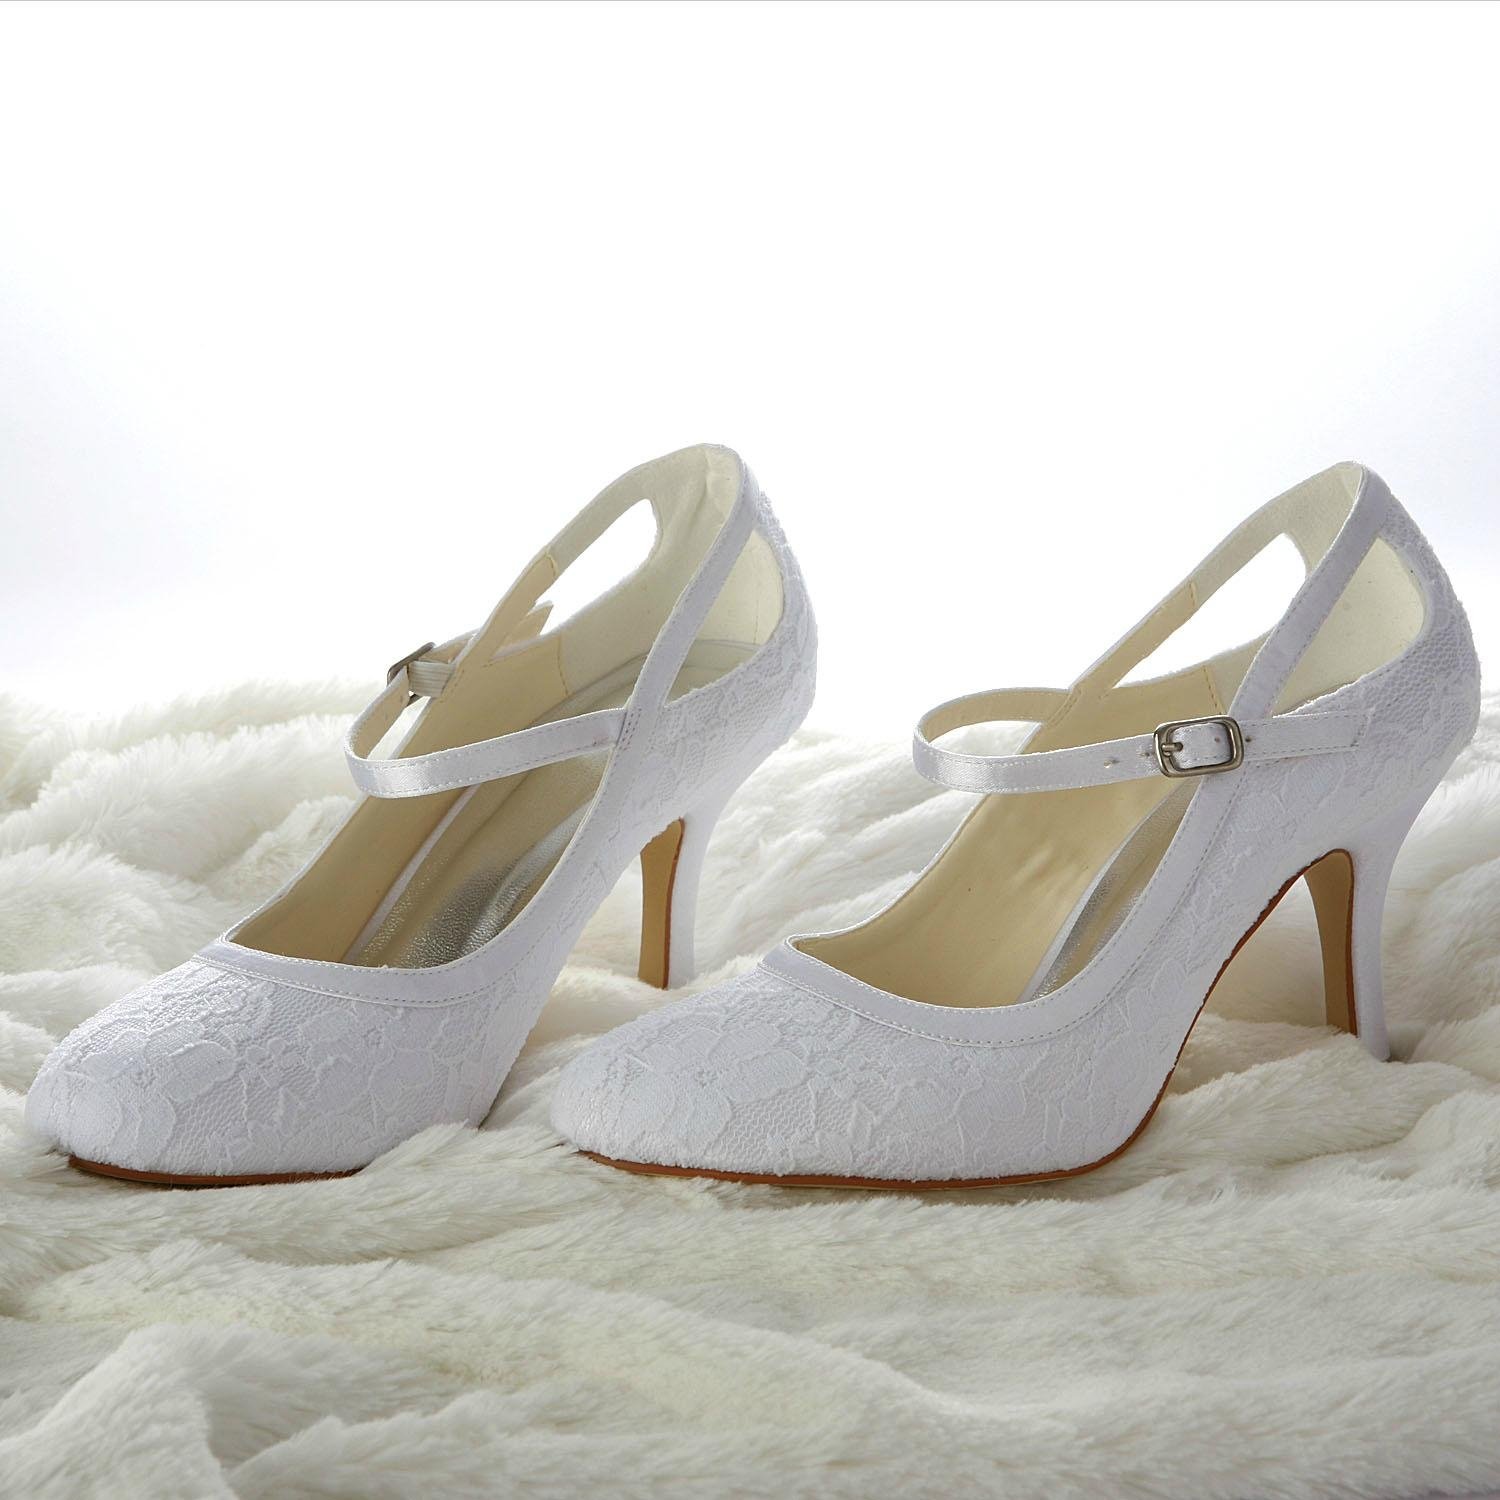 Lace pump low heel bridal shoe 5